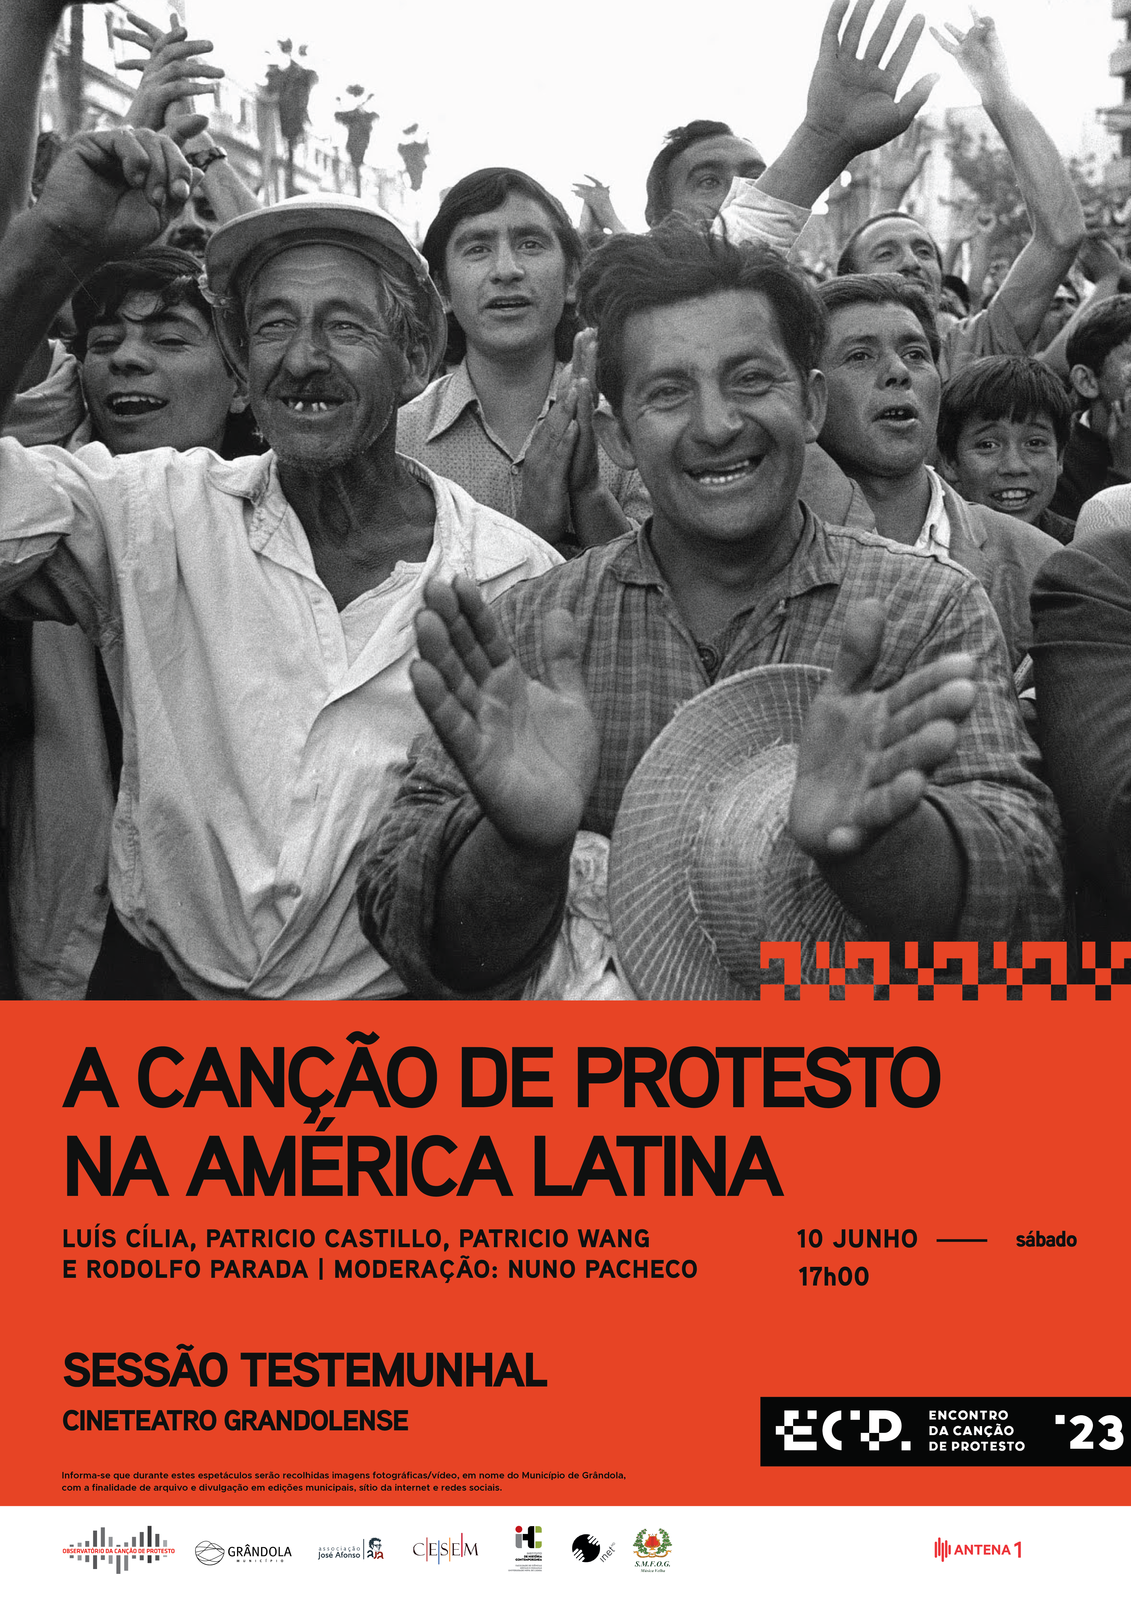 Encontro da Canção de Protesto | Sessão Testemunhal «A Canção de Protesto na América Latina»